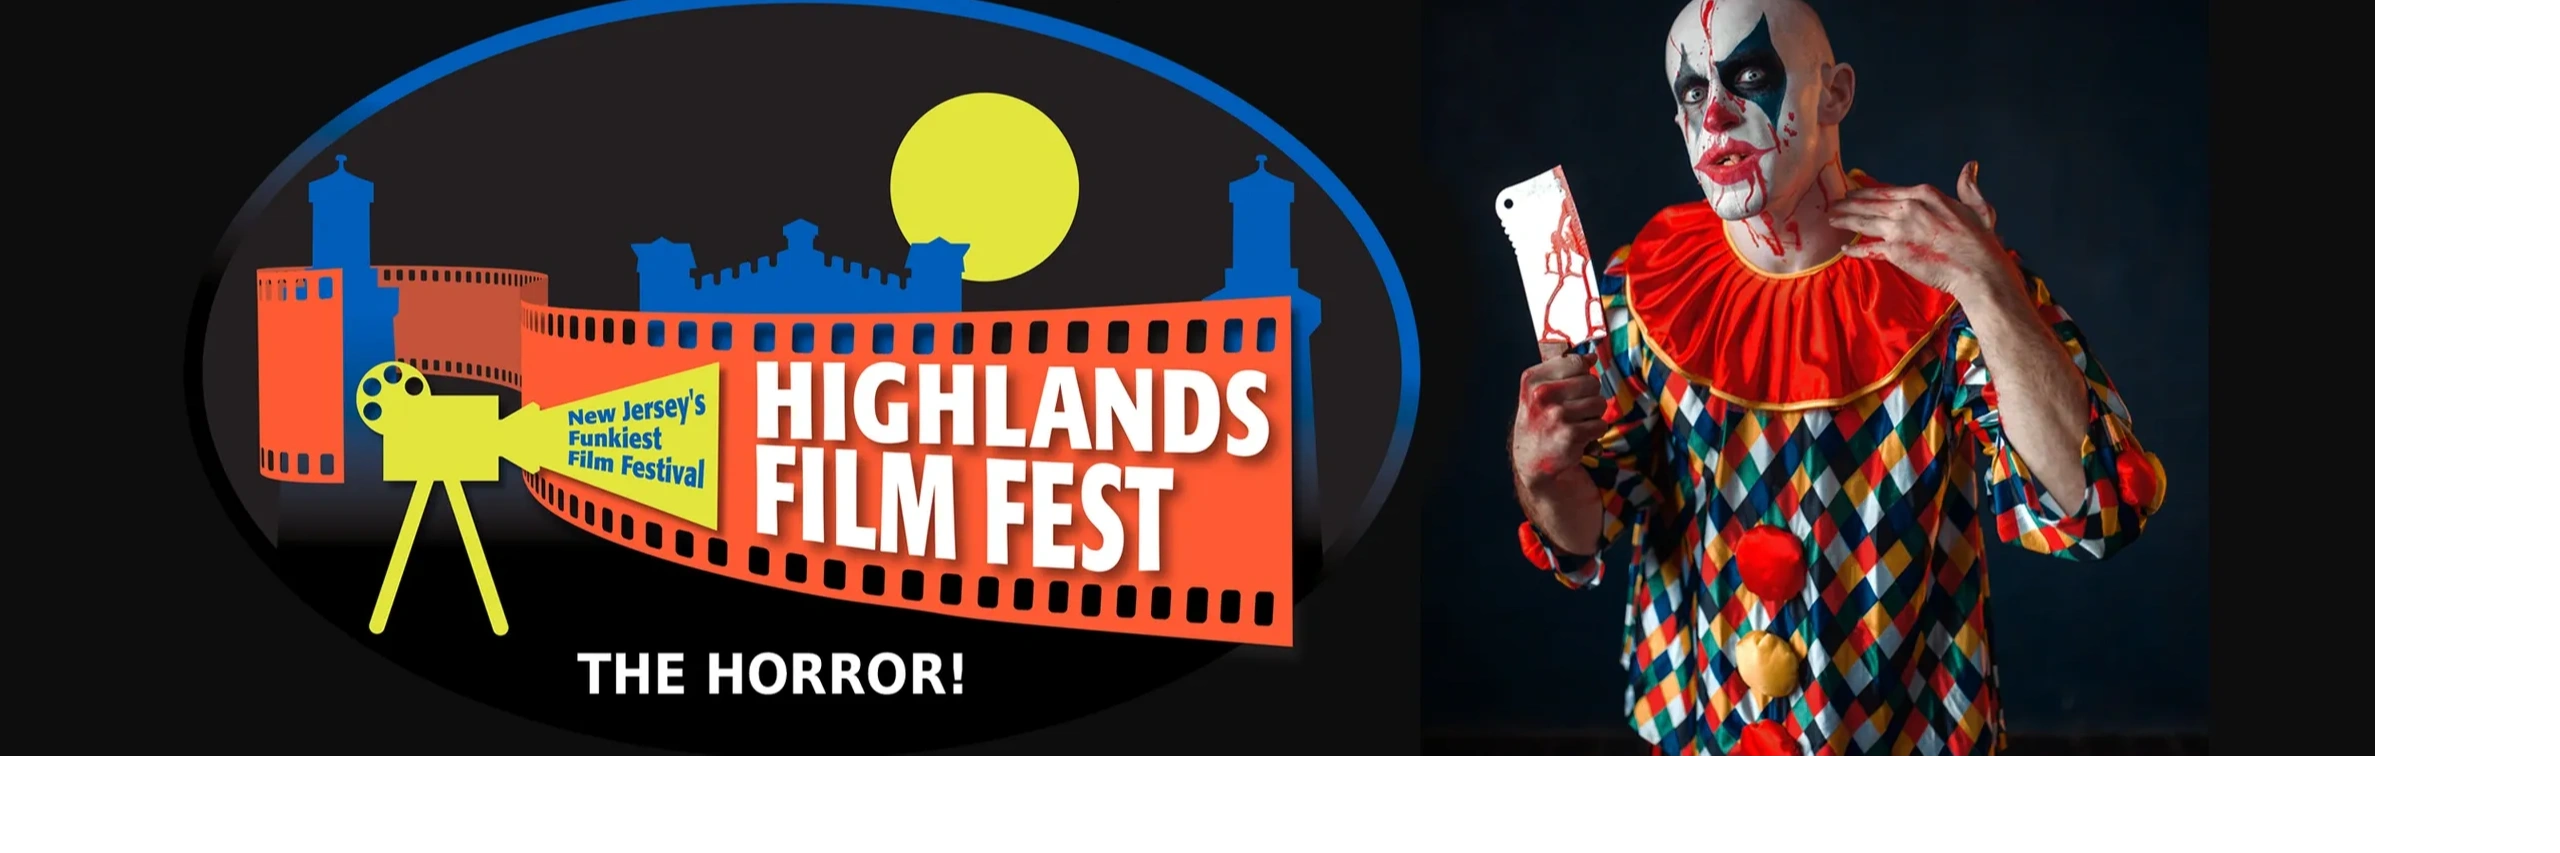 Highlands Film Fest - Film Festival, Festival